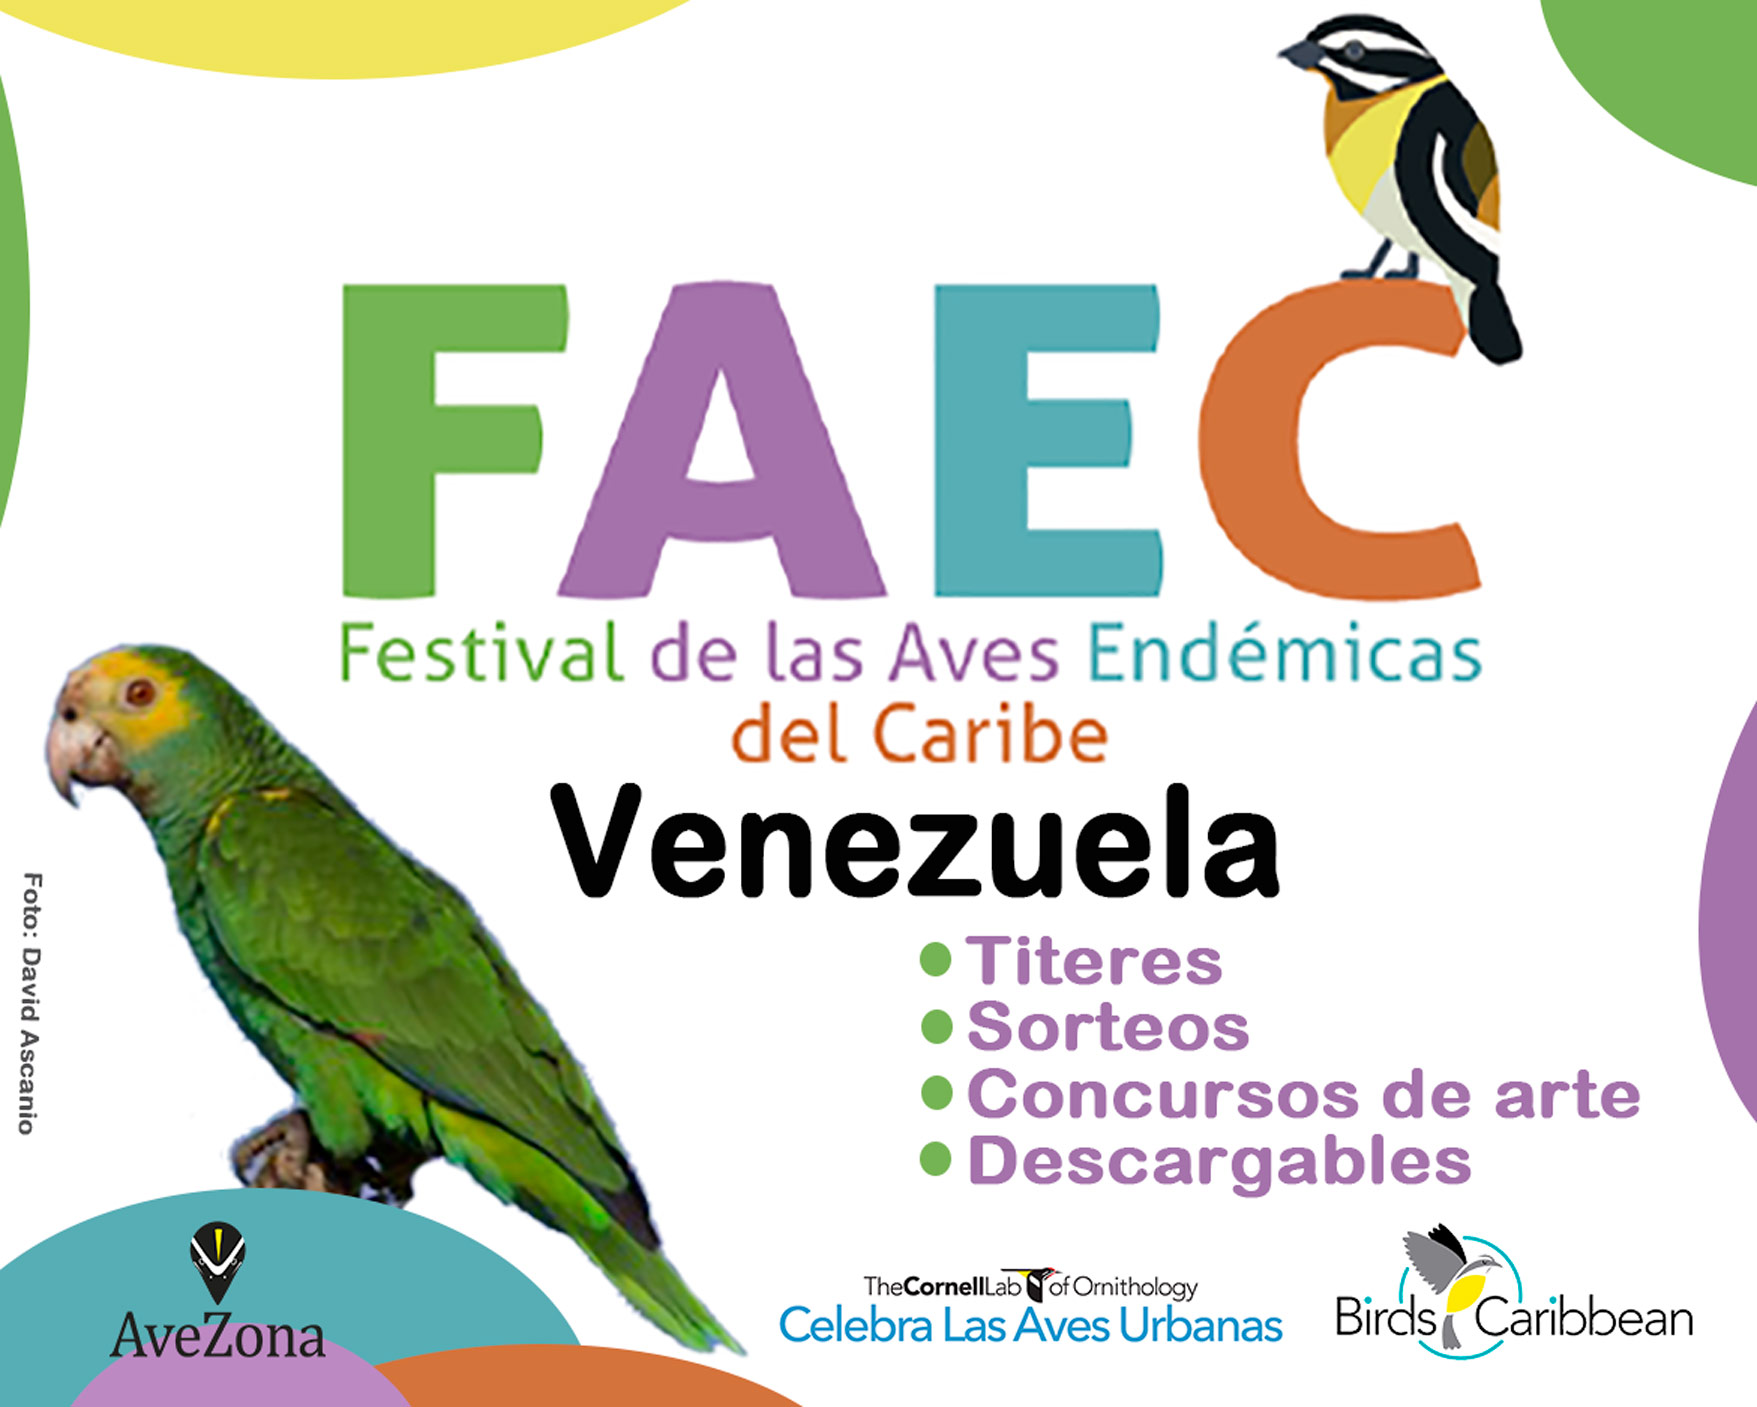 Festival de las Aves Endémicas del Caribe 2021